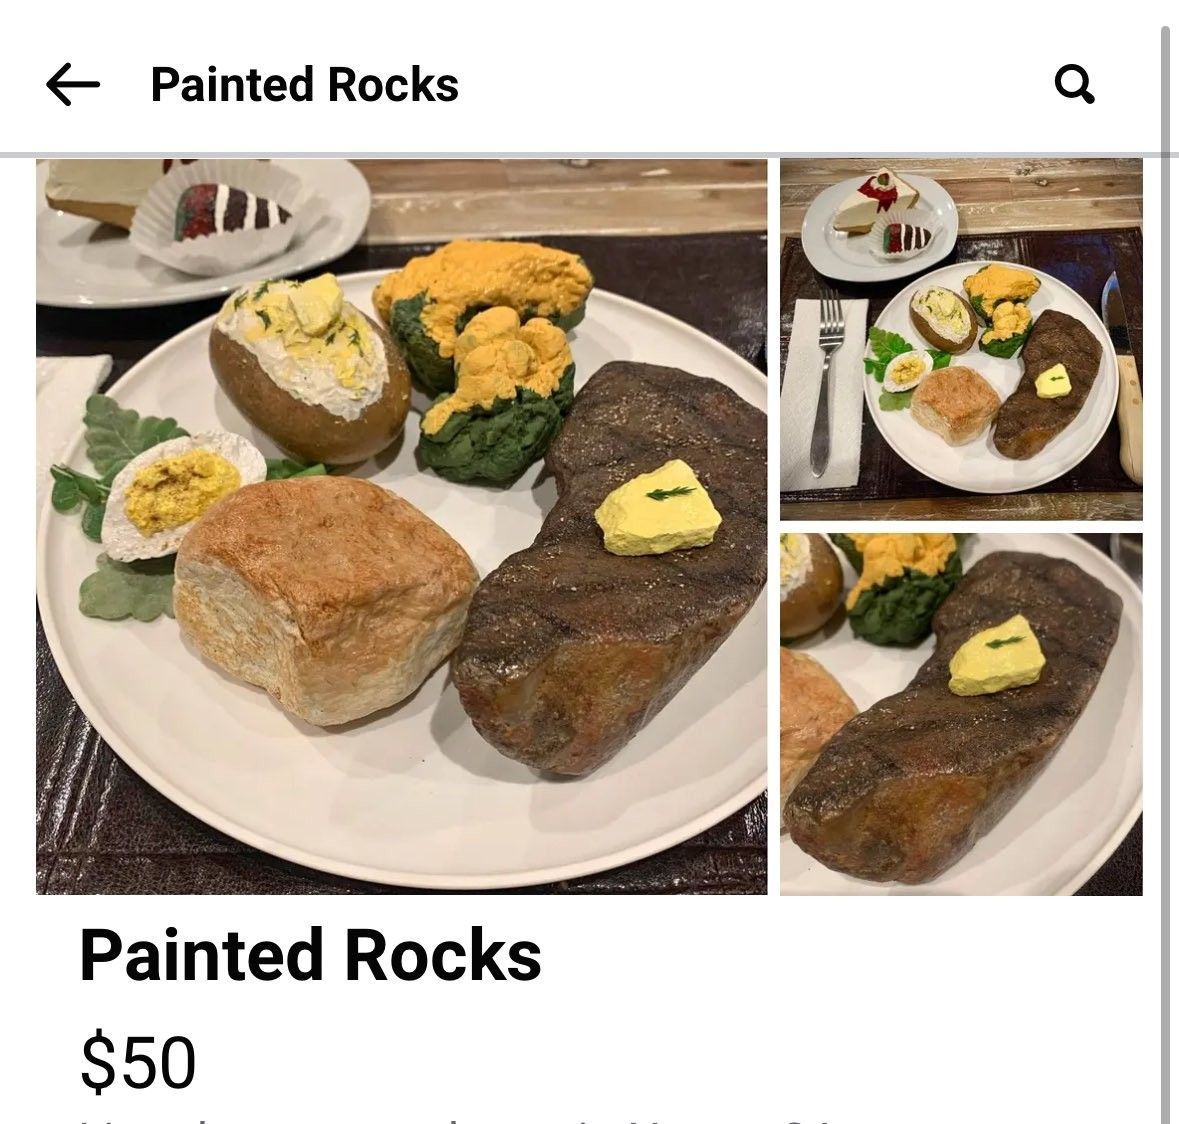 Waiter, my steak is hard as a rock